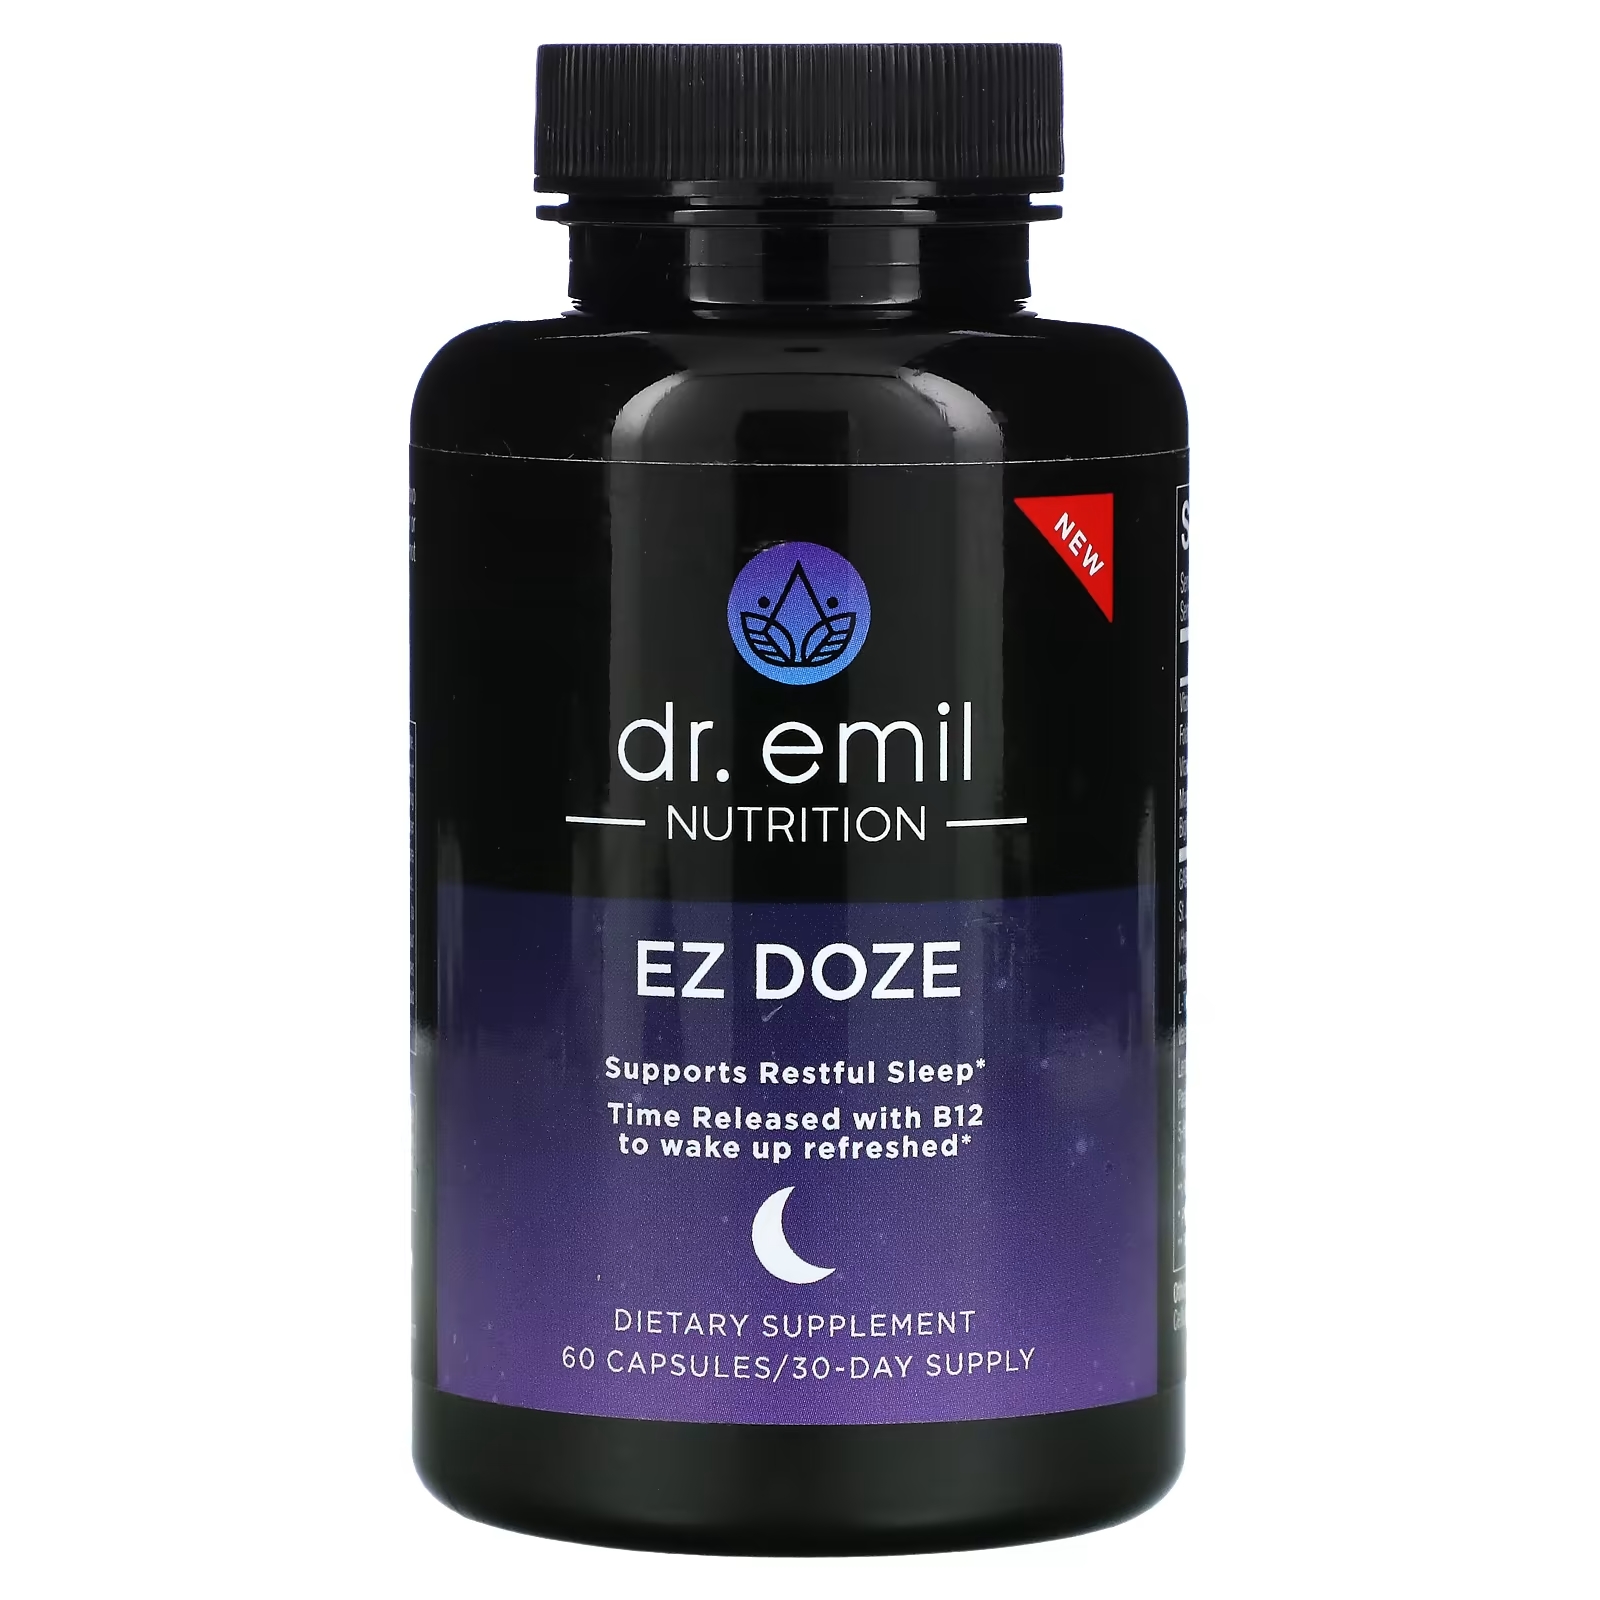 Dr Emil Nutrition EZ DOZE, 60 капсул dr emil nutrition 5 htp plus 200 мг 60 капсул